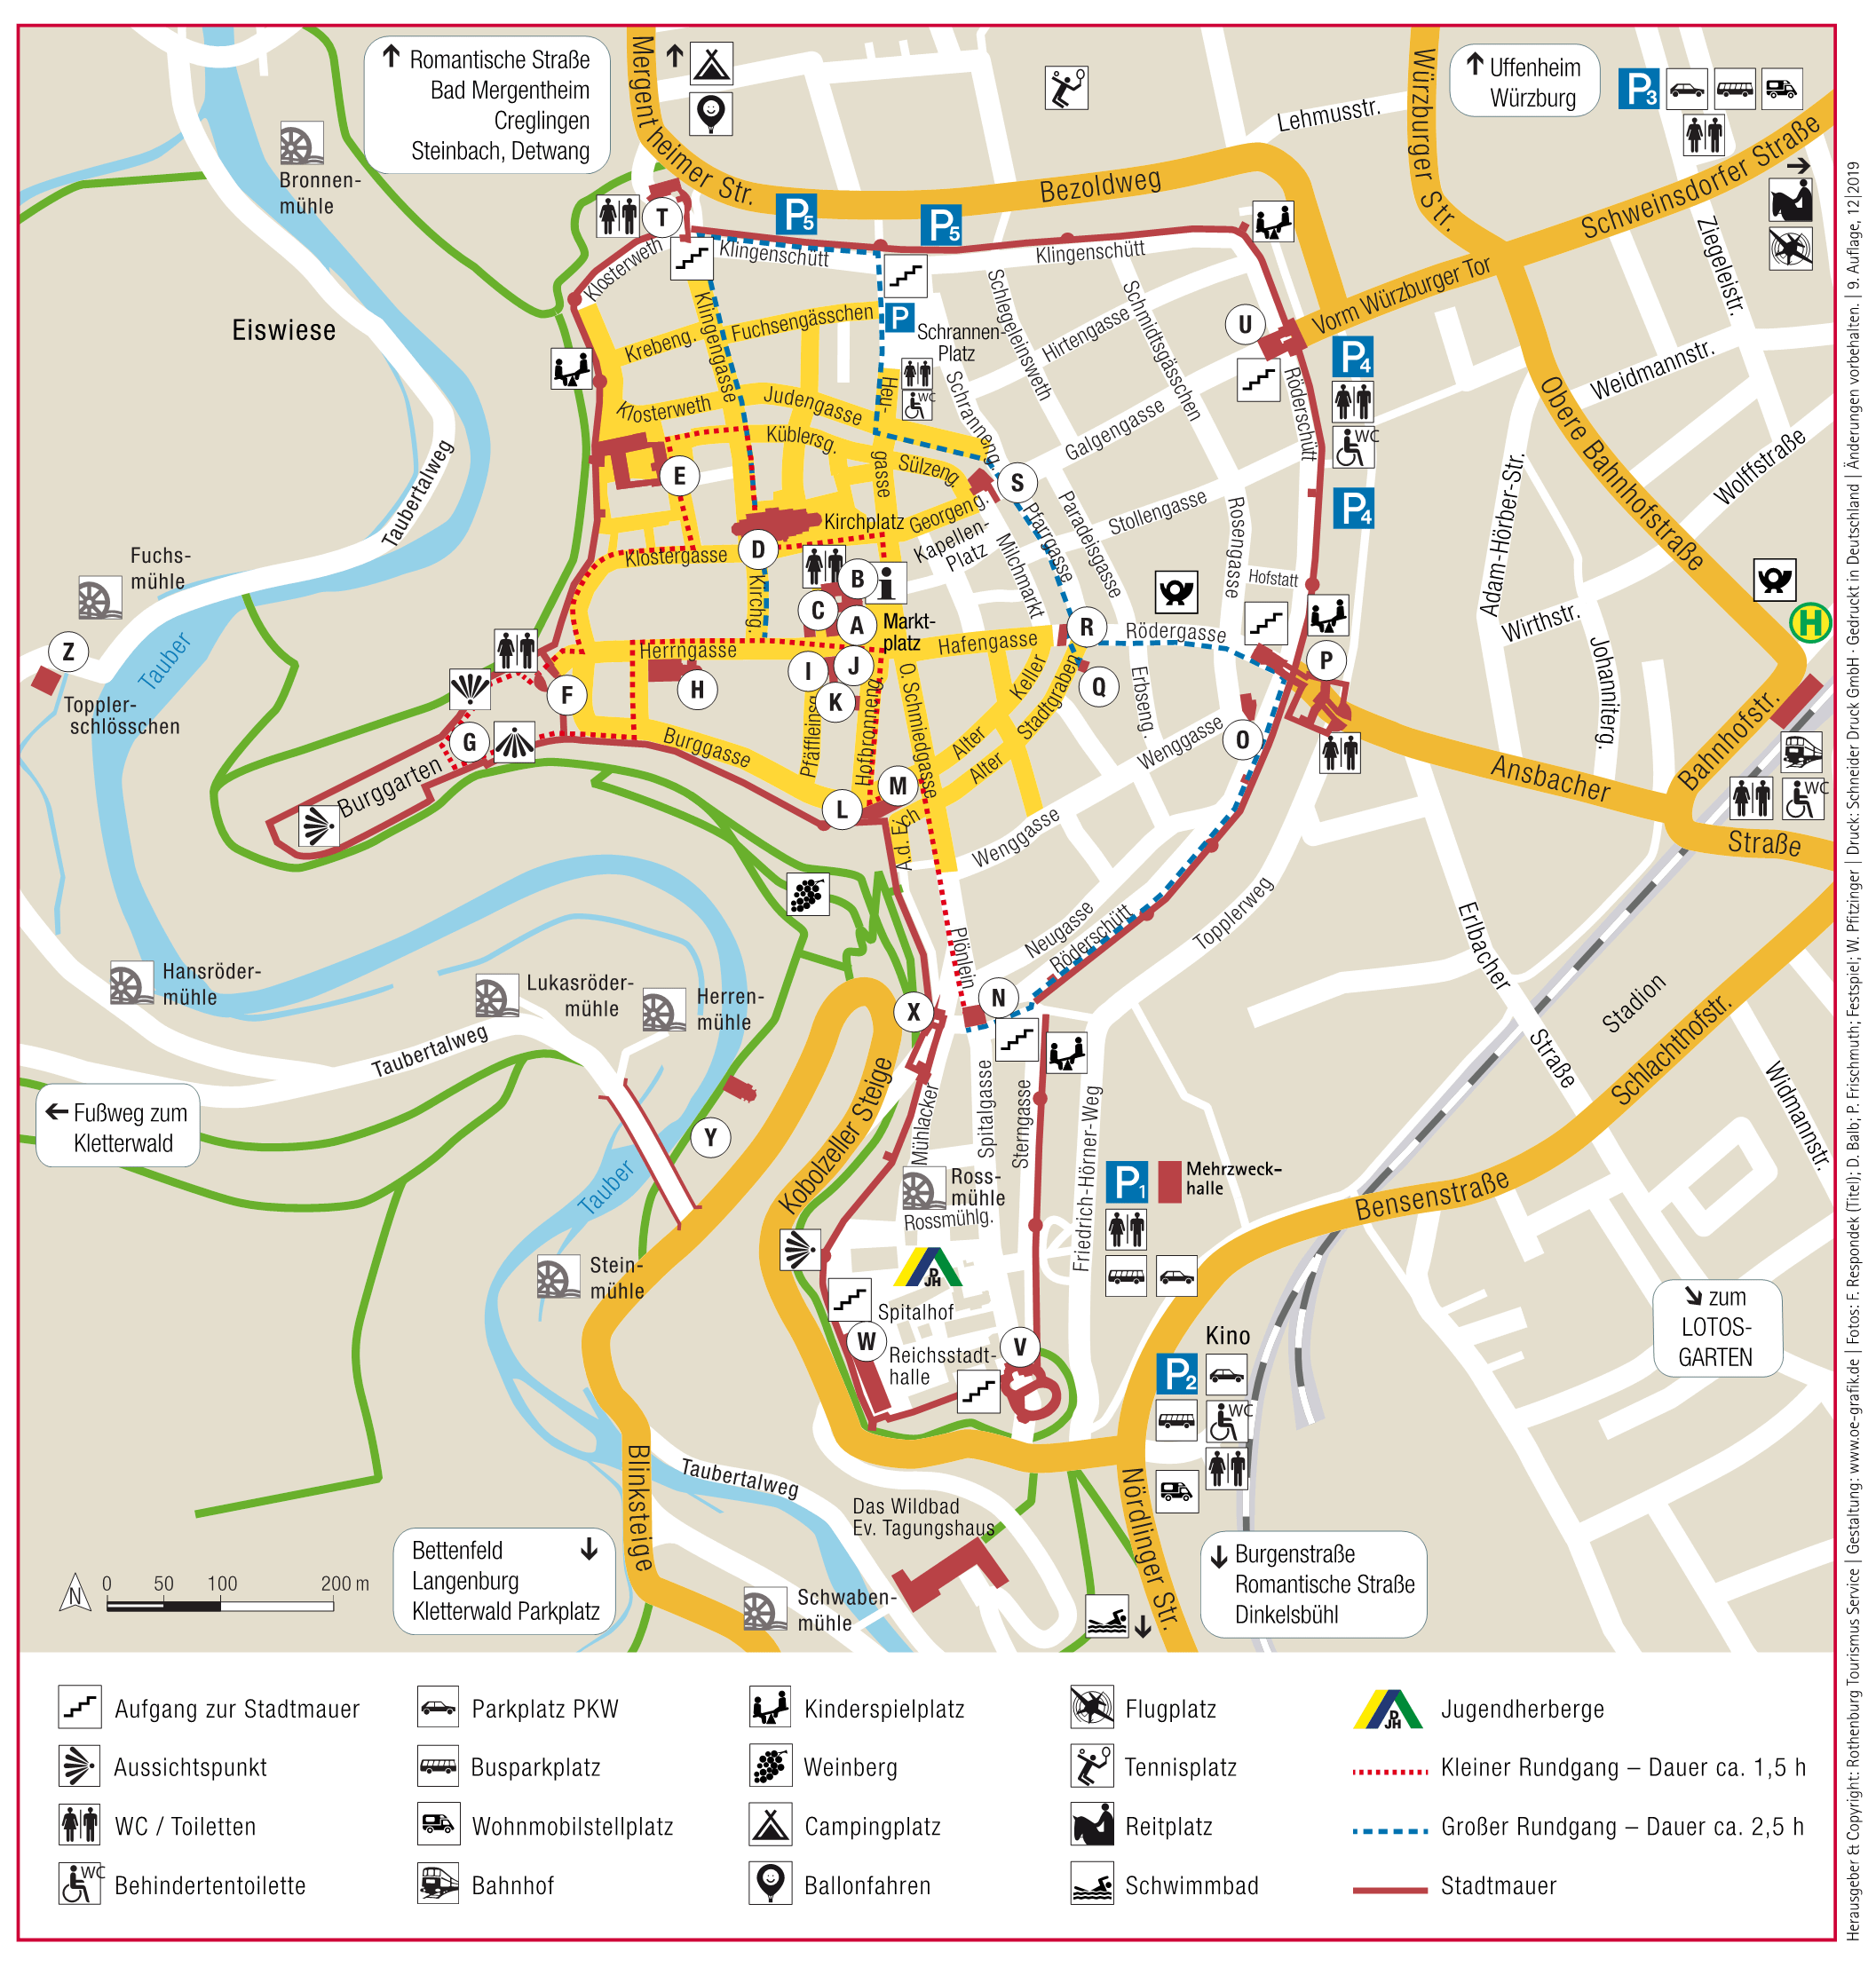 Stadtplan Rothenburg ob der Tauber